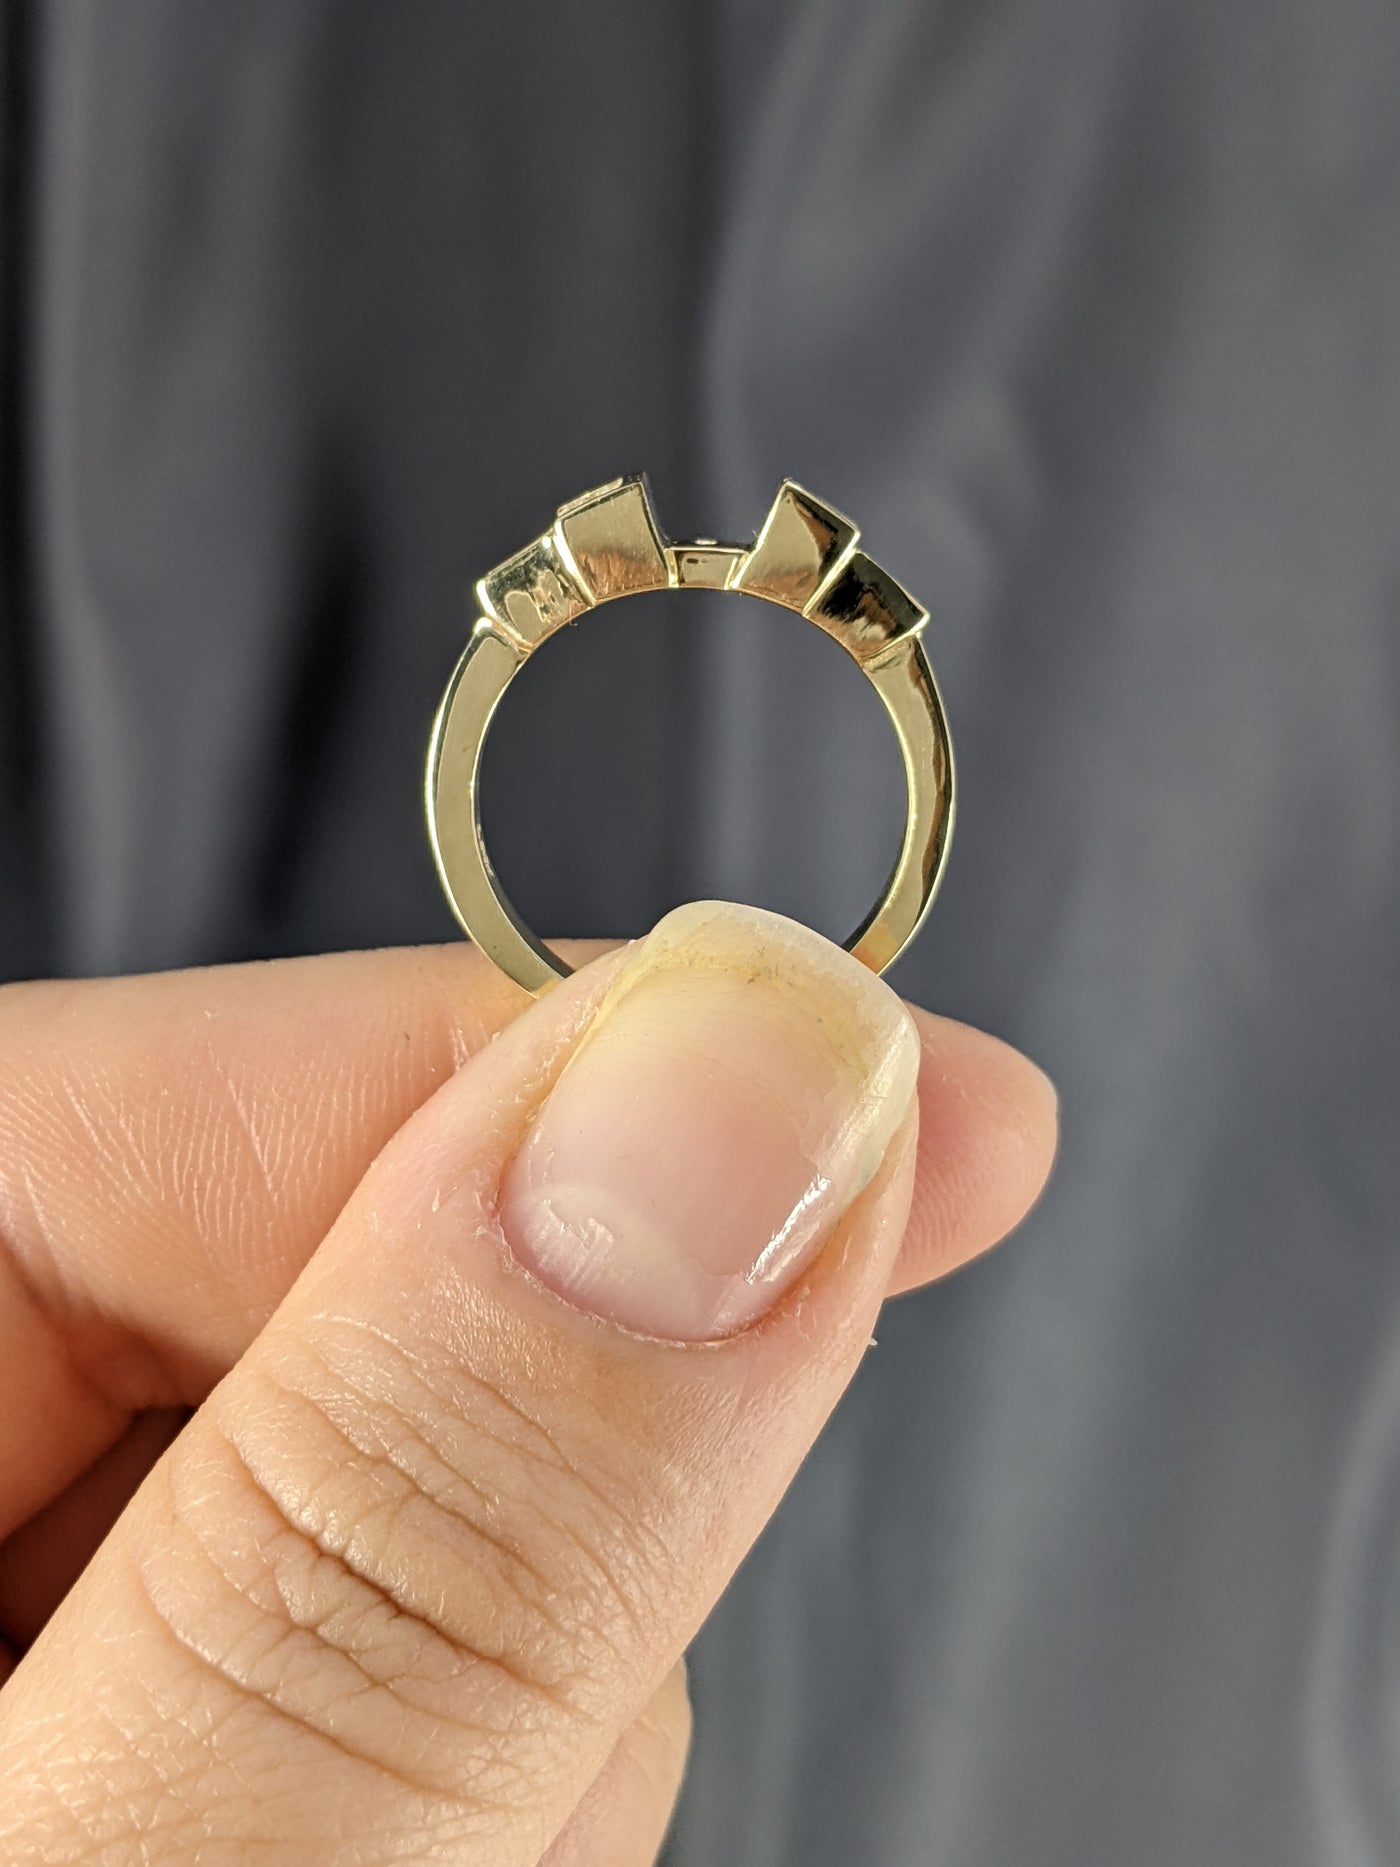 Ladies Semi-Mount 0.50 Ct. Tw. Multi-Cut Diamond Engagement Ring